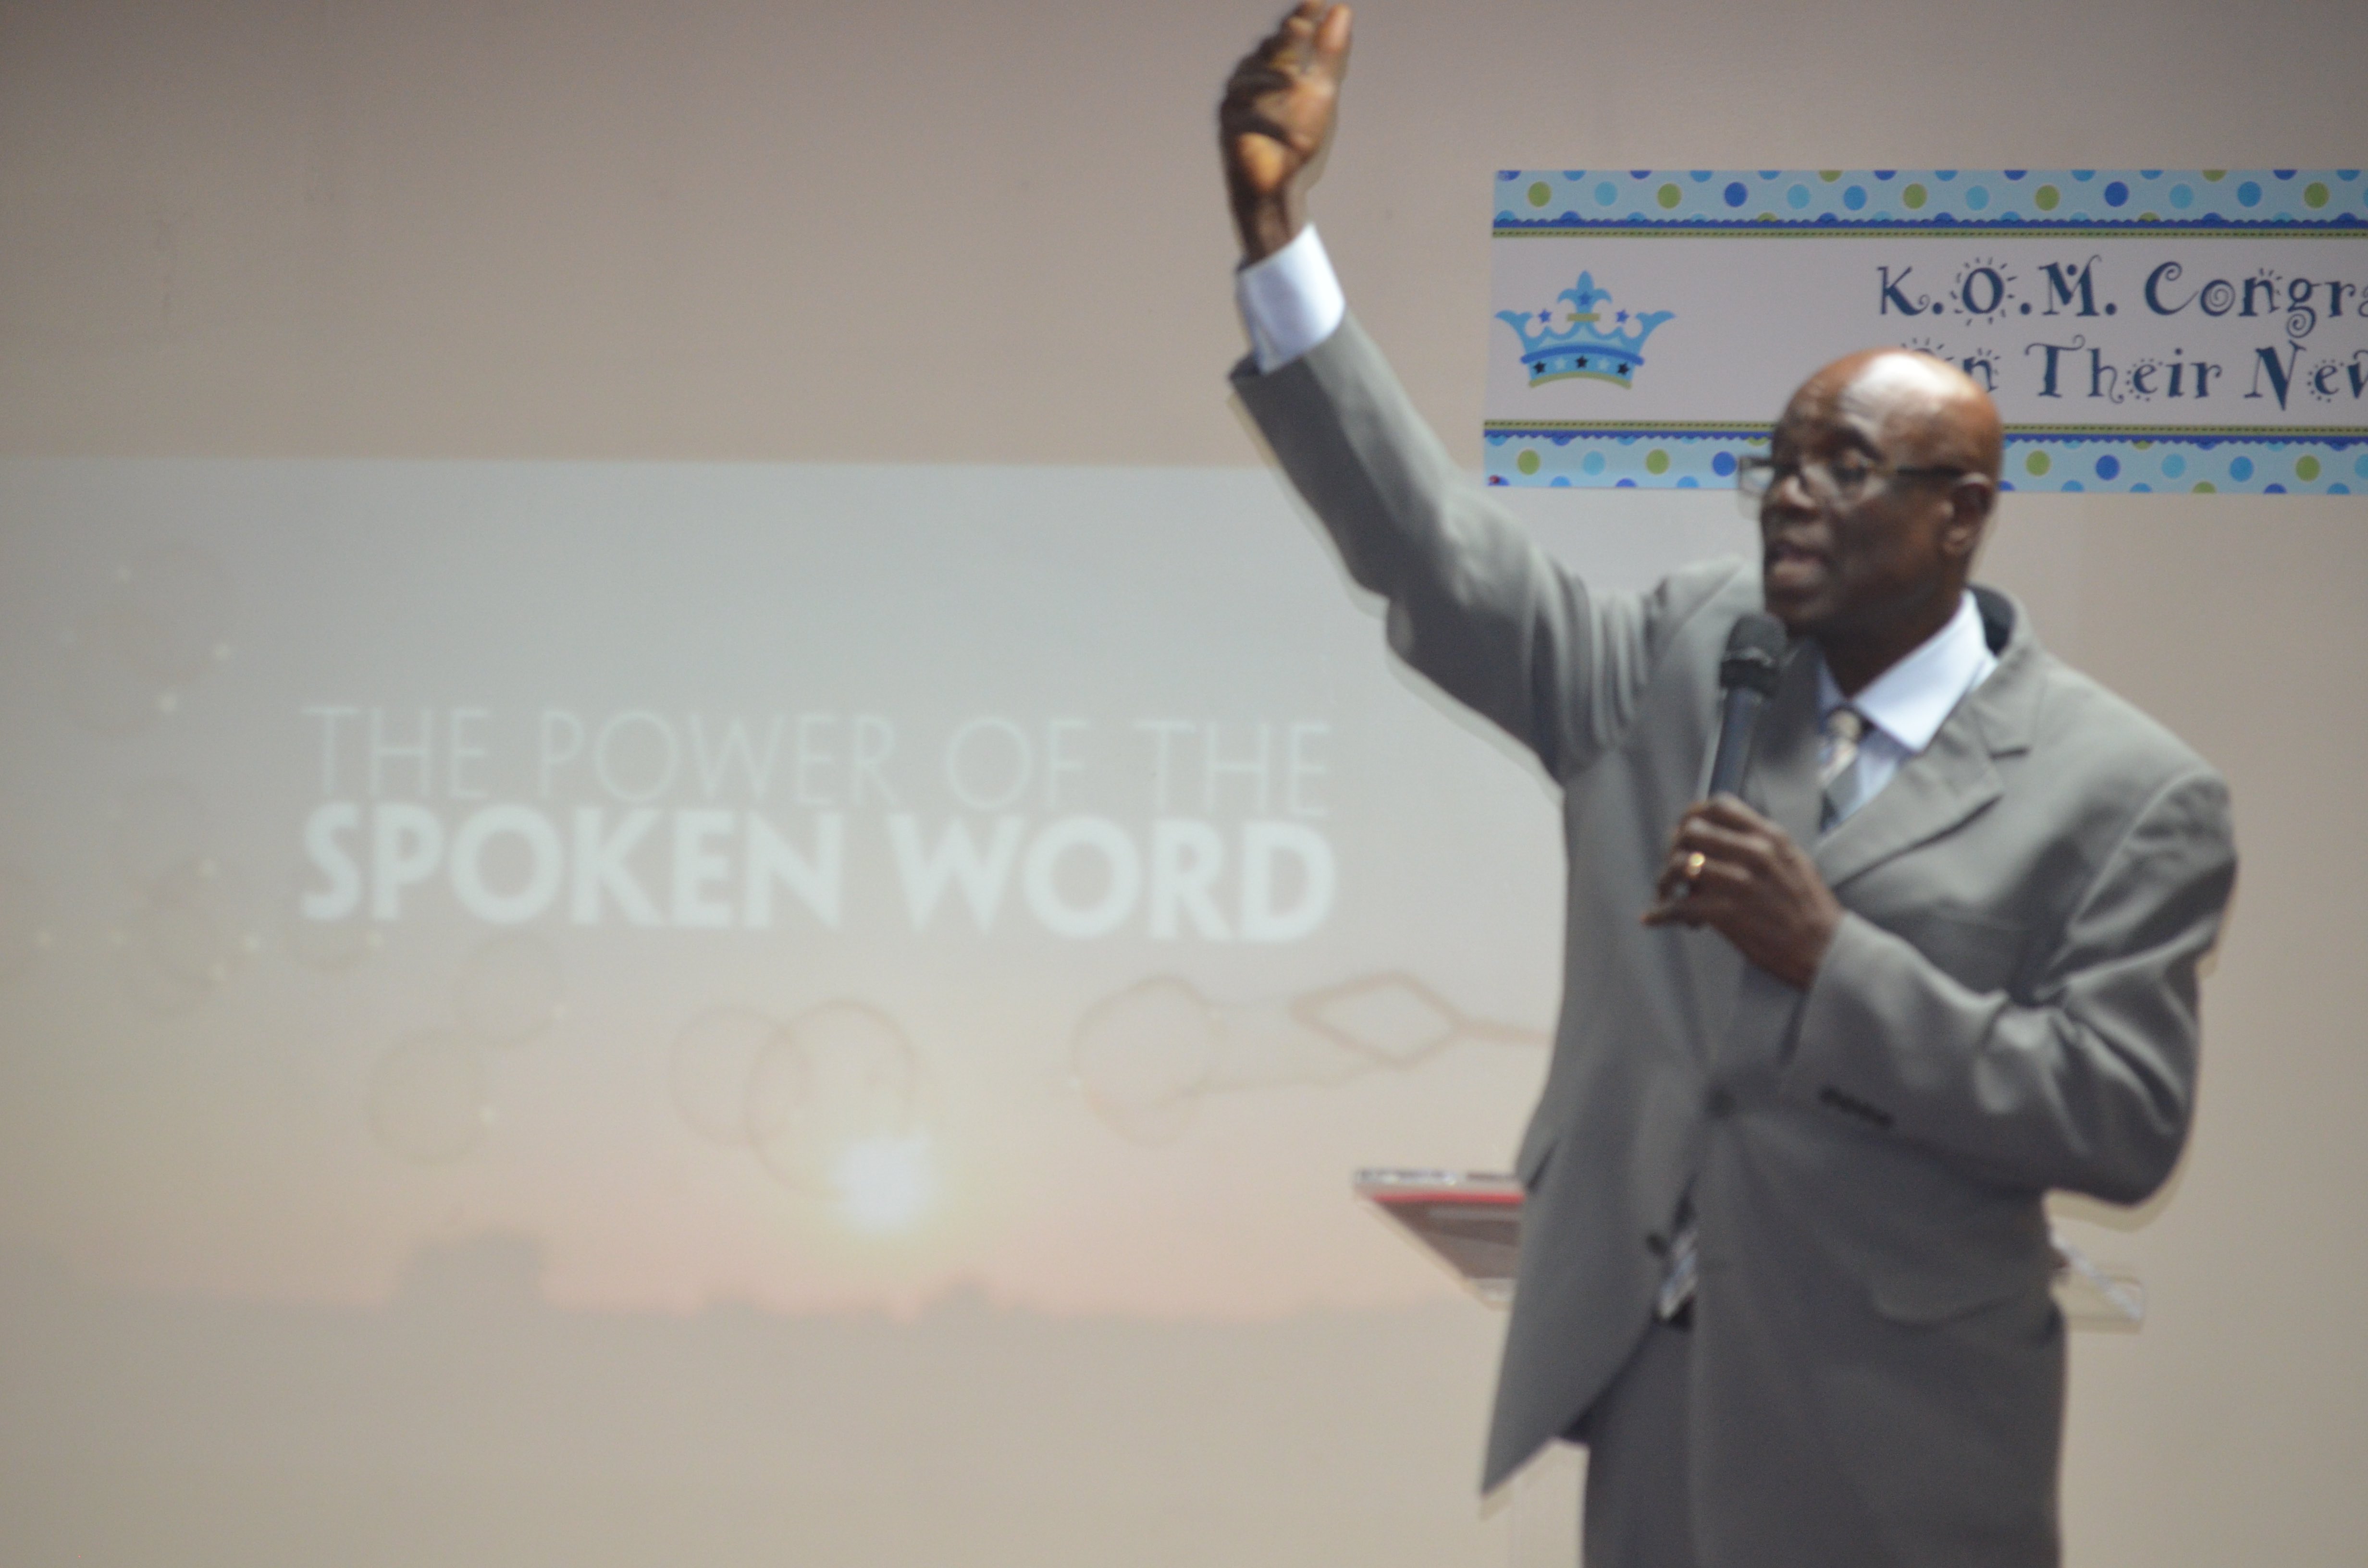 Understanding the Power of the Spoken Word